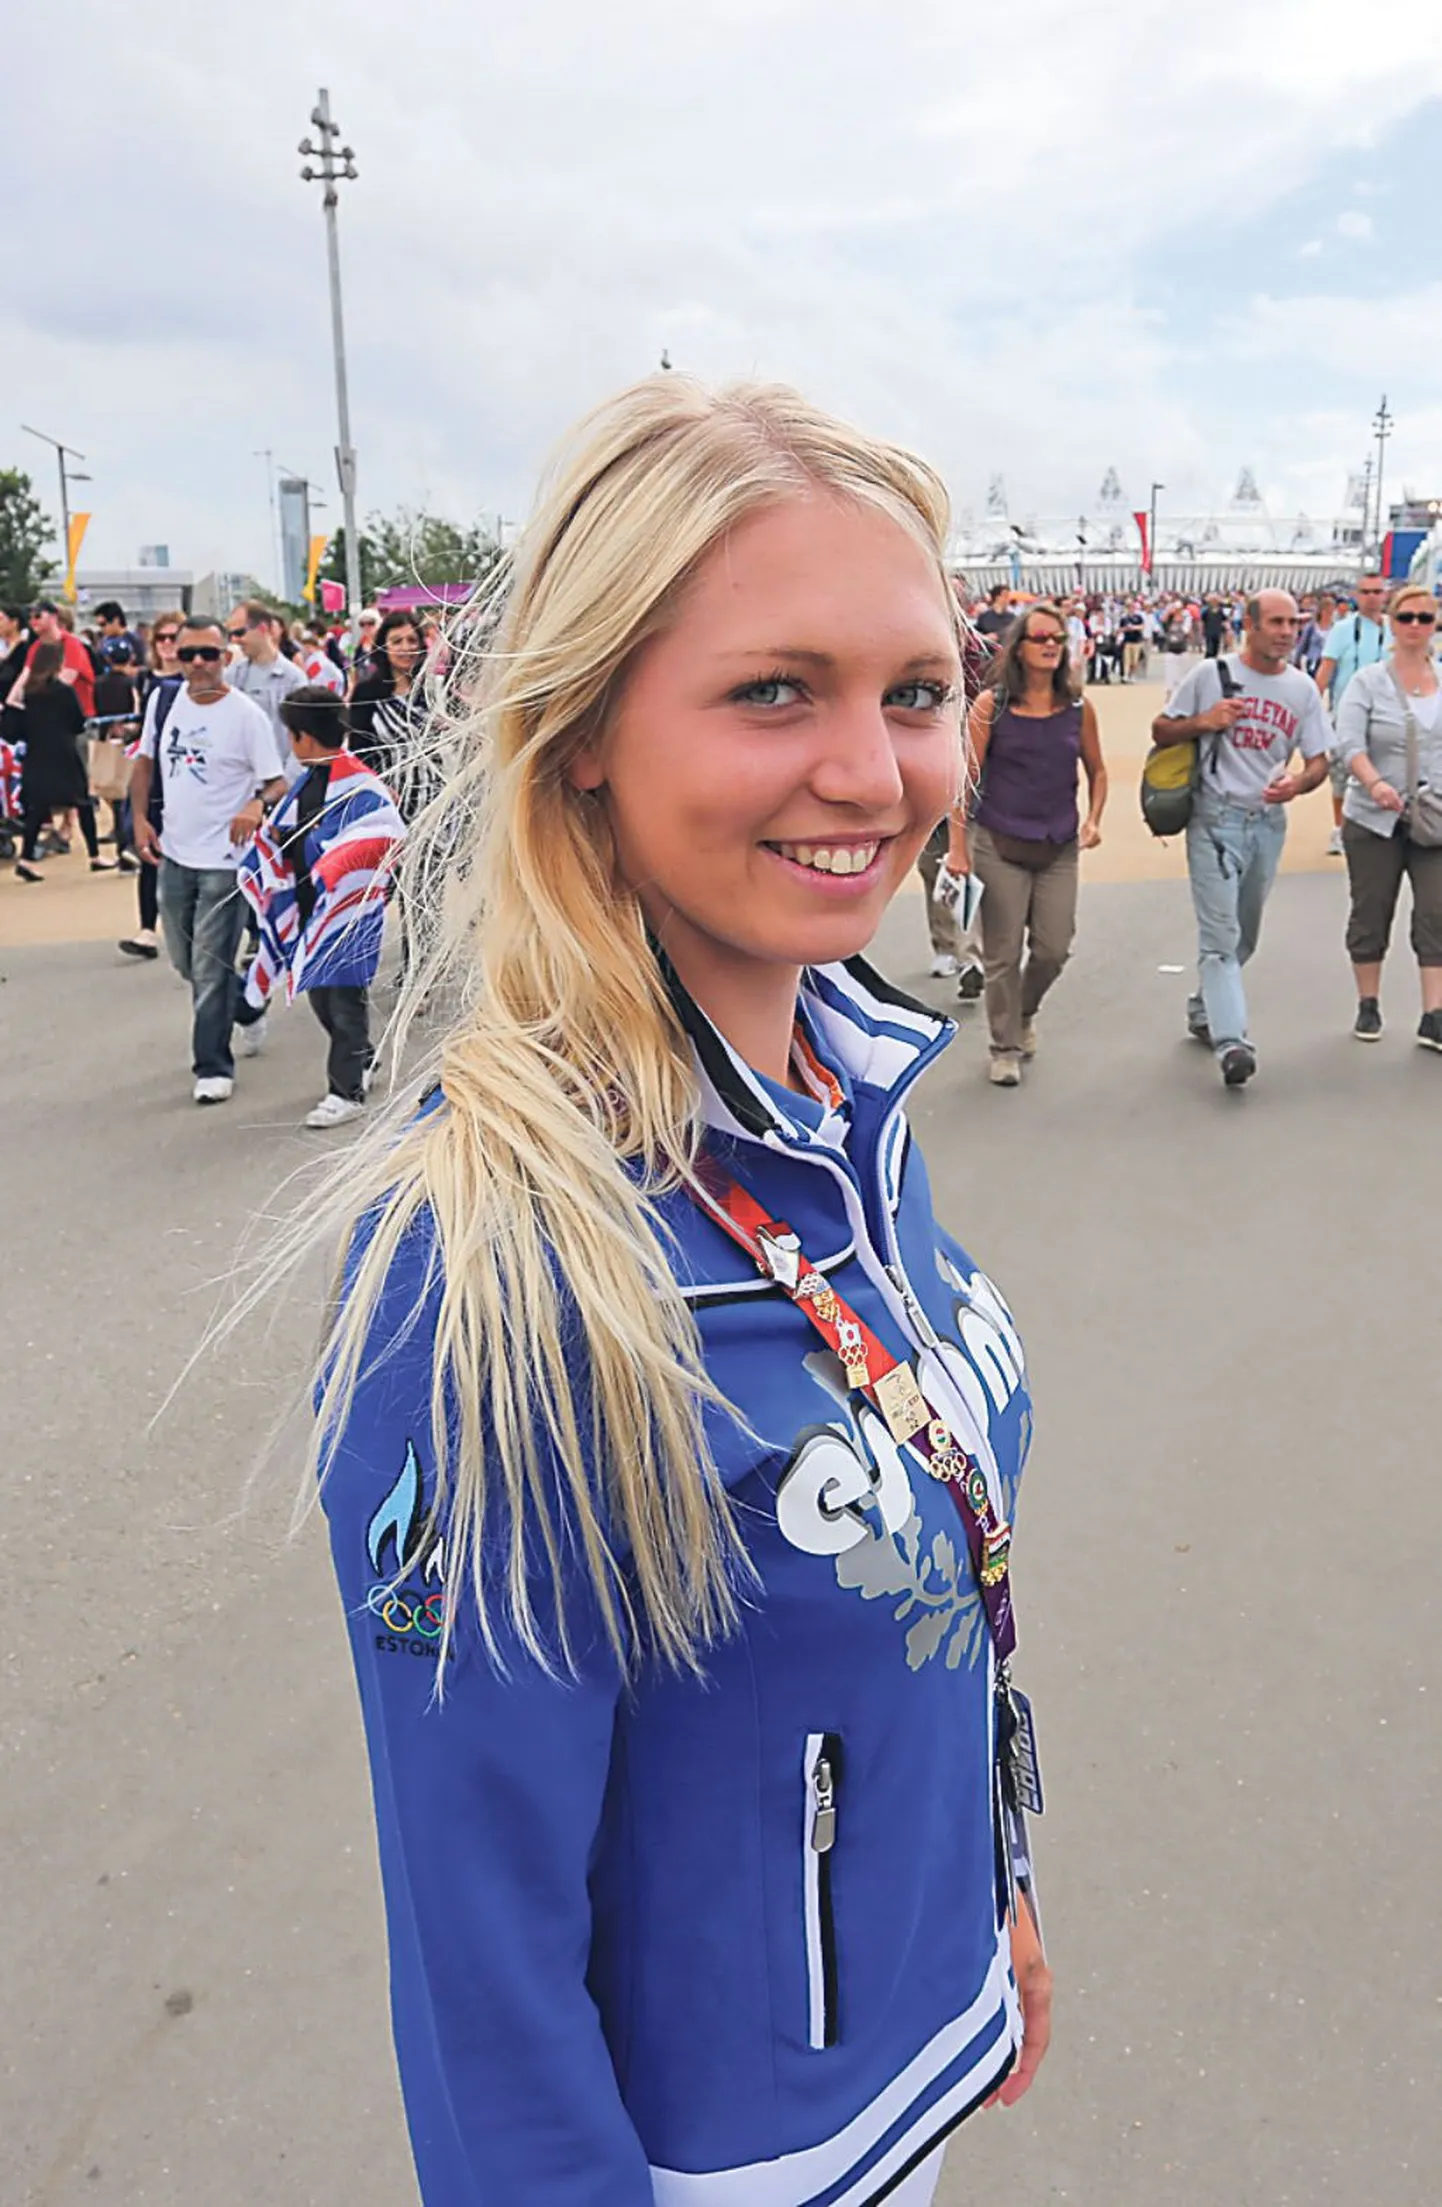 Eesti delegatsiooni pesamuna, Pärnu piiga Reena Pärnat võistles oma esimestel olümpiamängudel vibulaskmises vapralt ja värisemata.